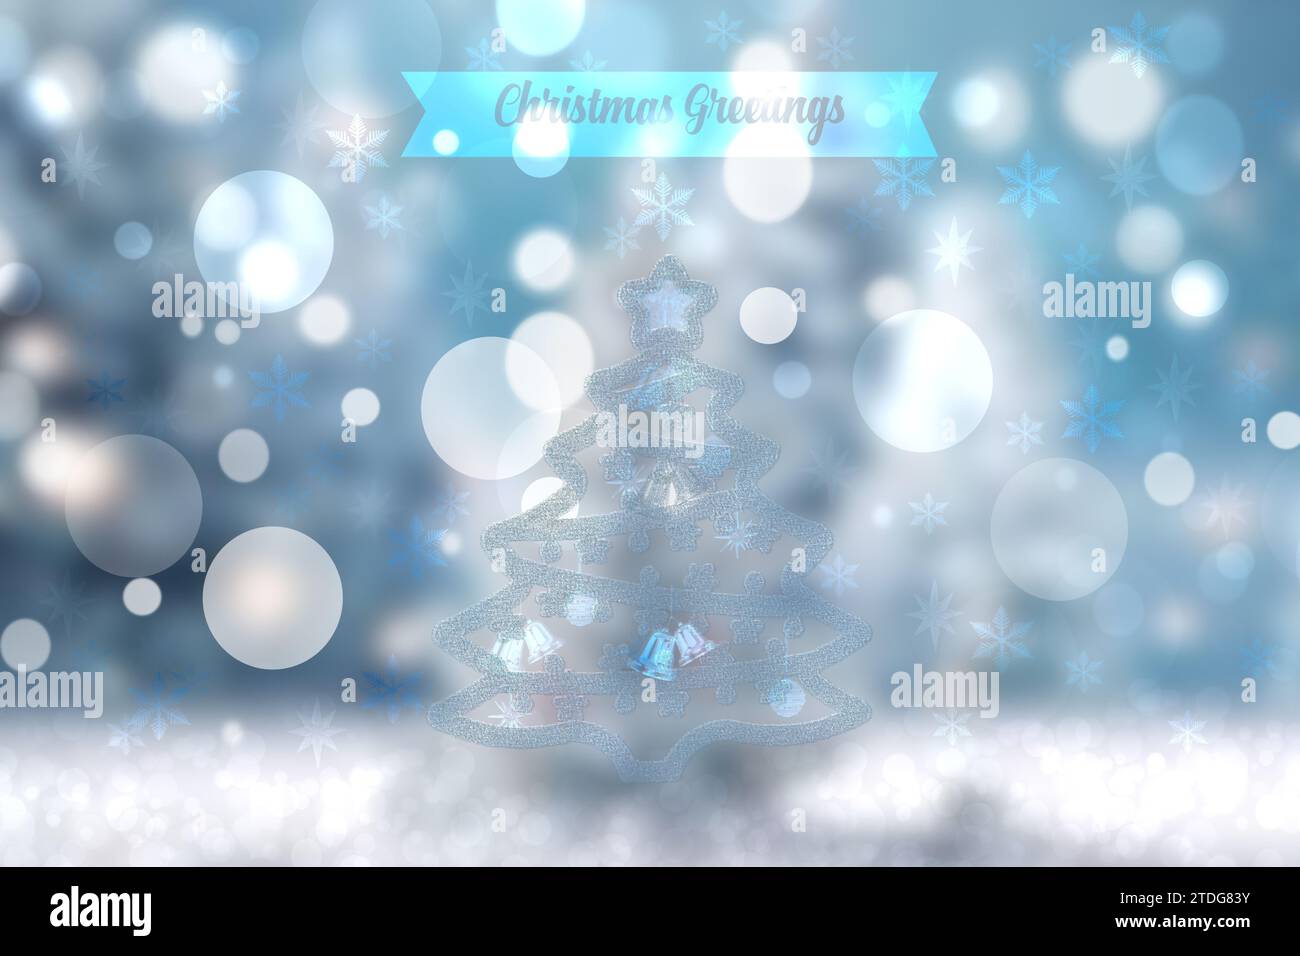 Carte de voeux abstraite festive blanche brillante bleue avec un sapin de noël, des étoiles et un texte de joyeux Noël illuminé bokeh. Magnifique toile de fond Banque D'Images